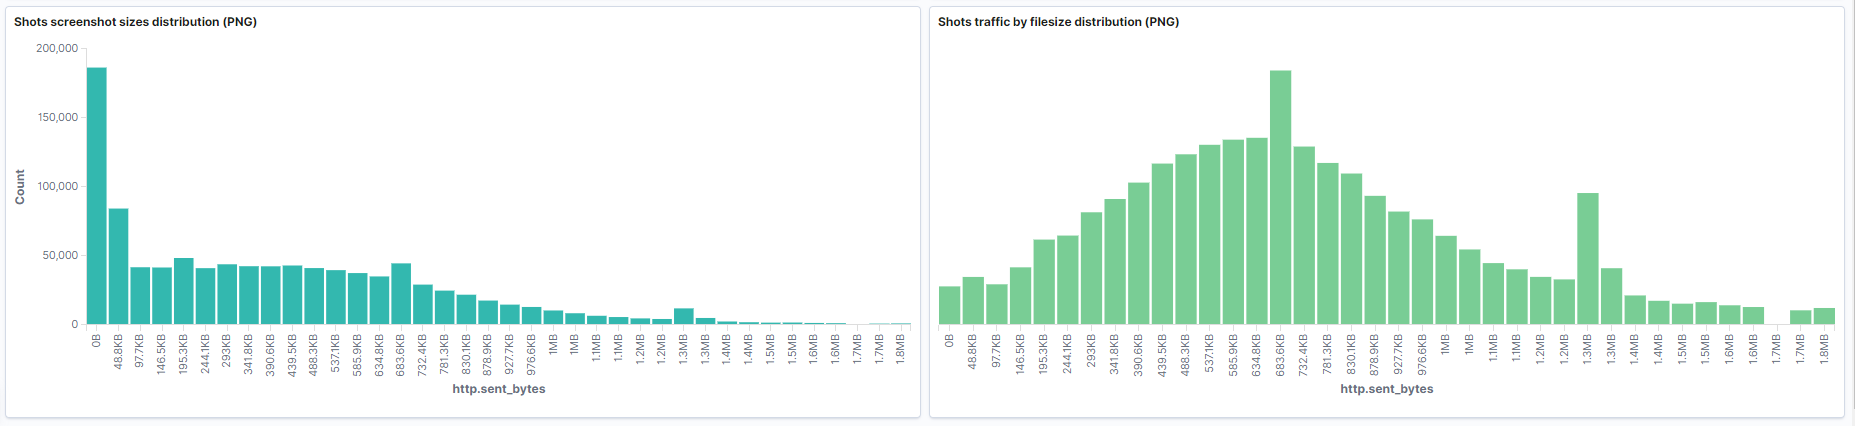 Графики распределения скриншотов по размеру и трафику